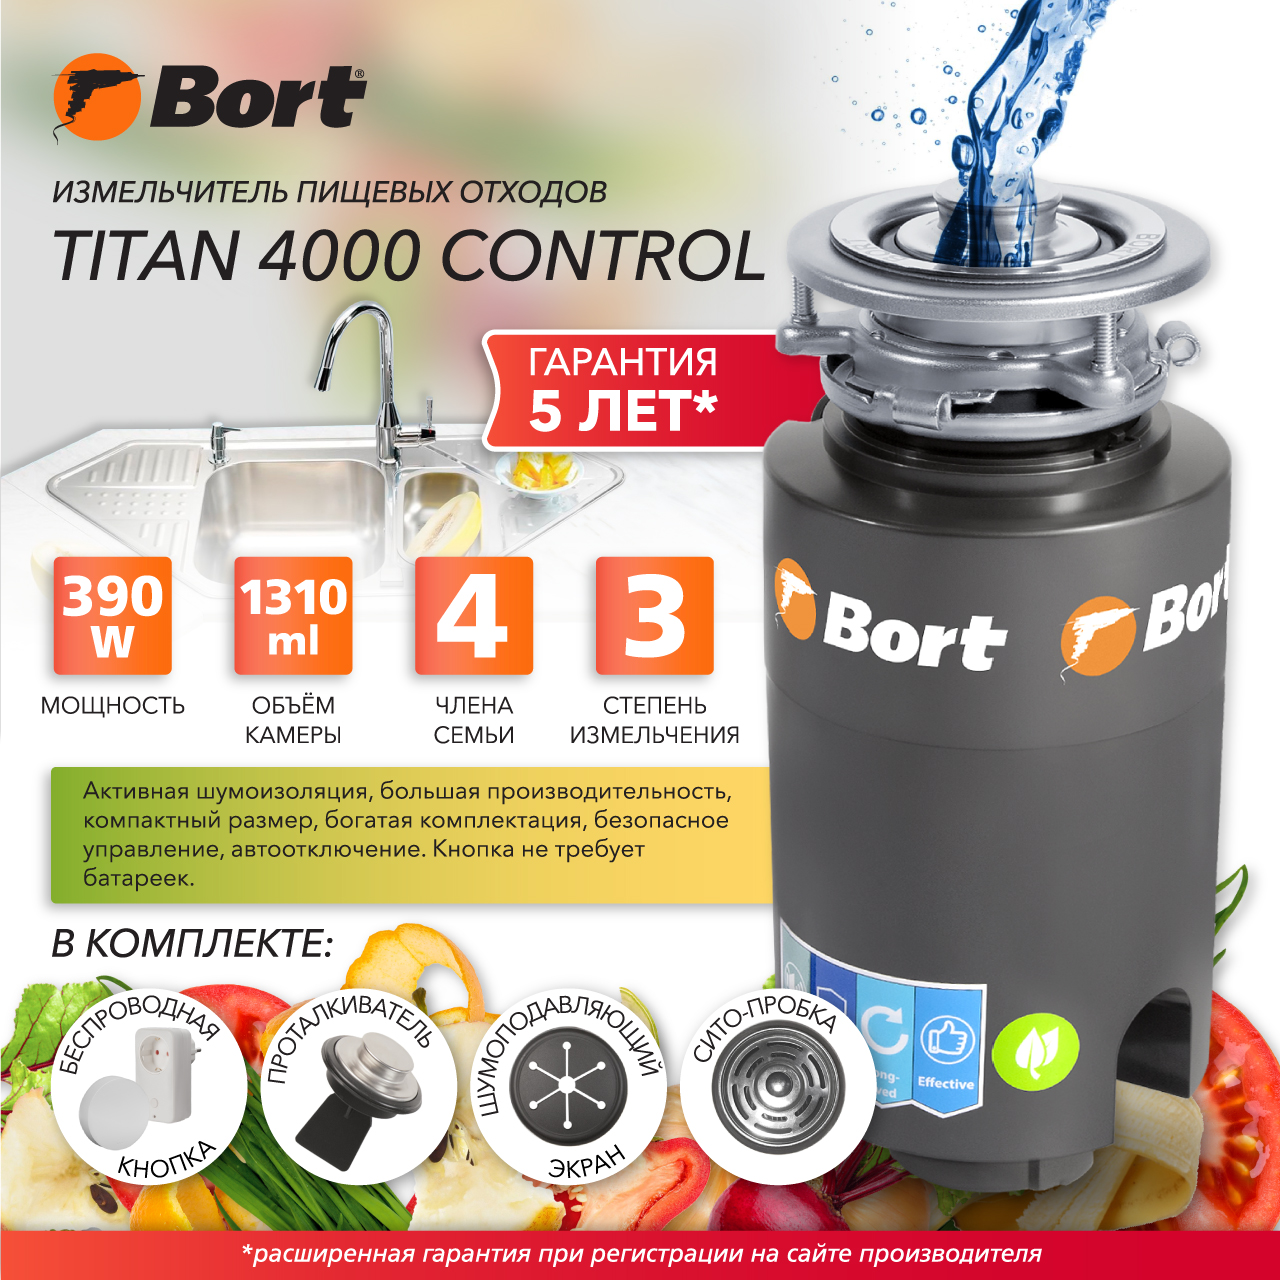  пищевых отходов Bort TITAN 4000 Control (93410242 .